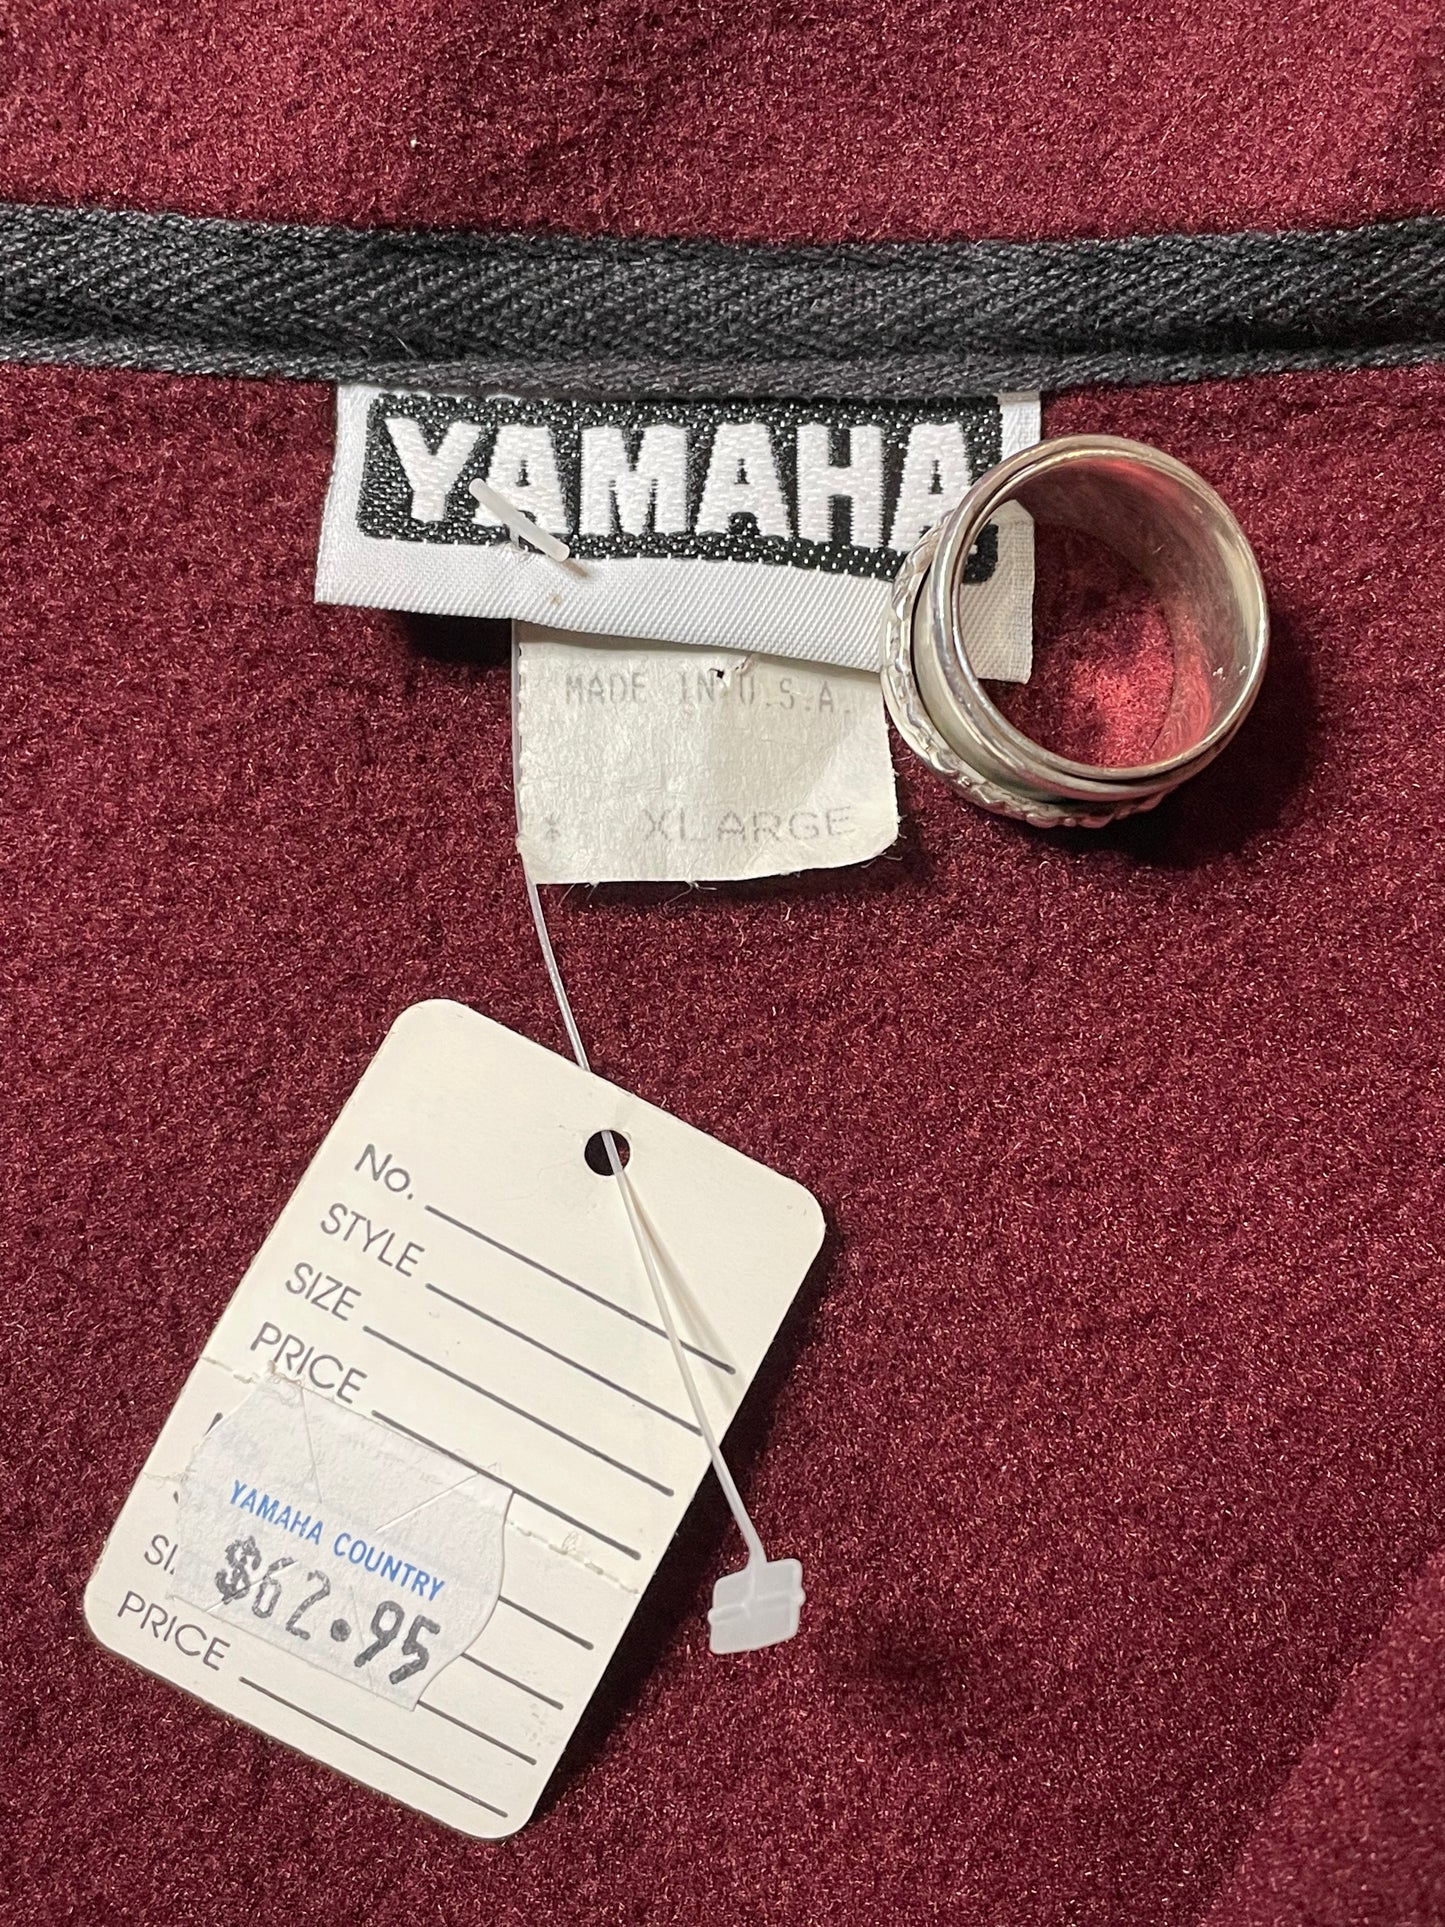 1990s Yamaha Fleece